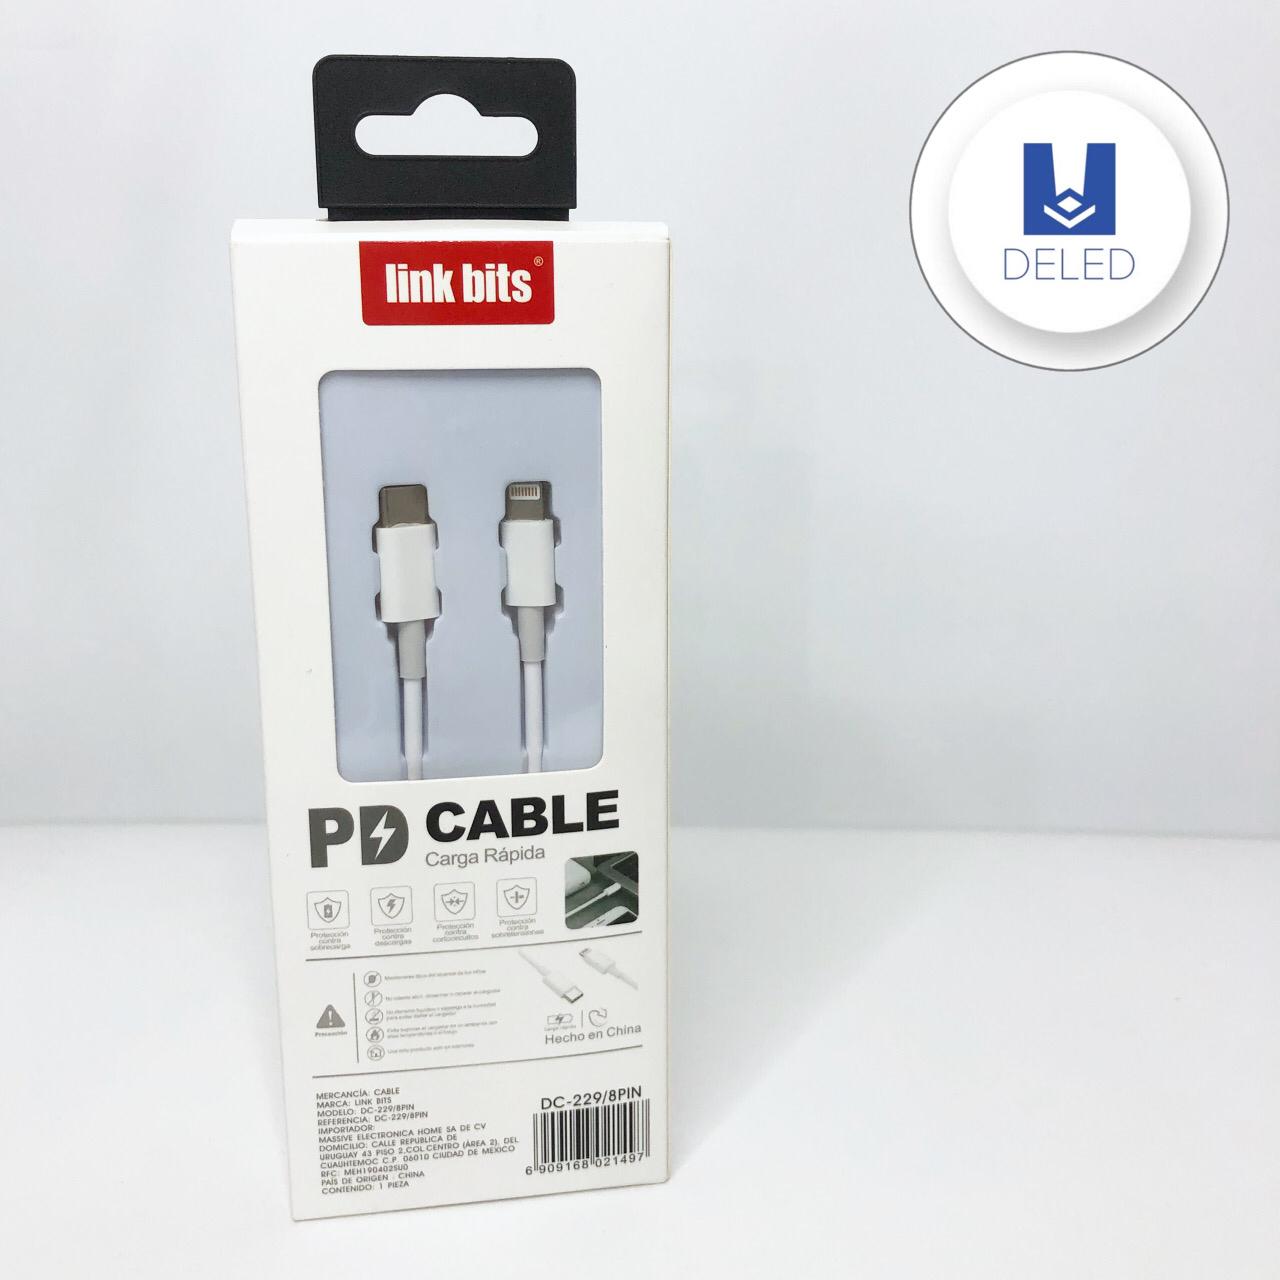 Cable Cargador USB Tipo C a Lightning Carga Rápida para iPhone LINK BITS DC-229/8PIN